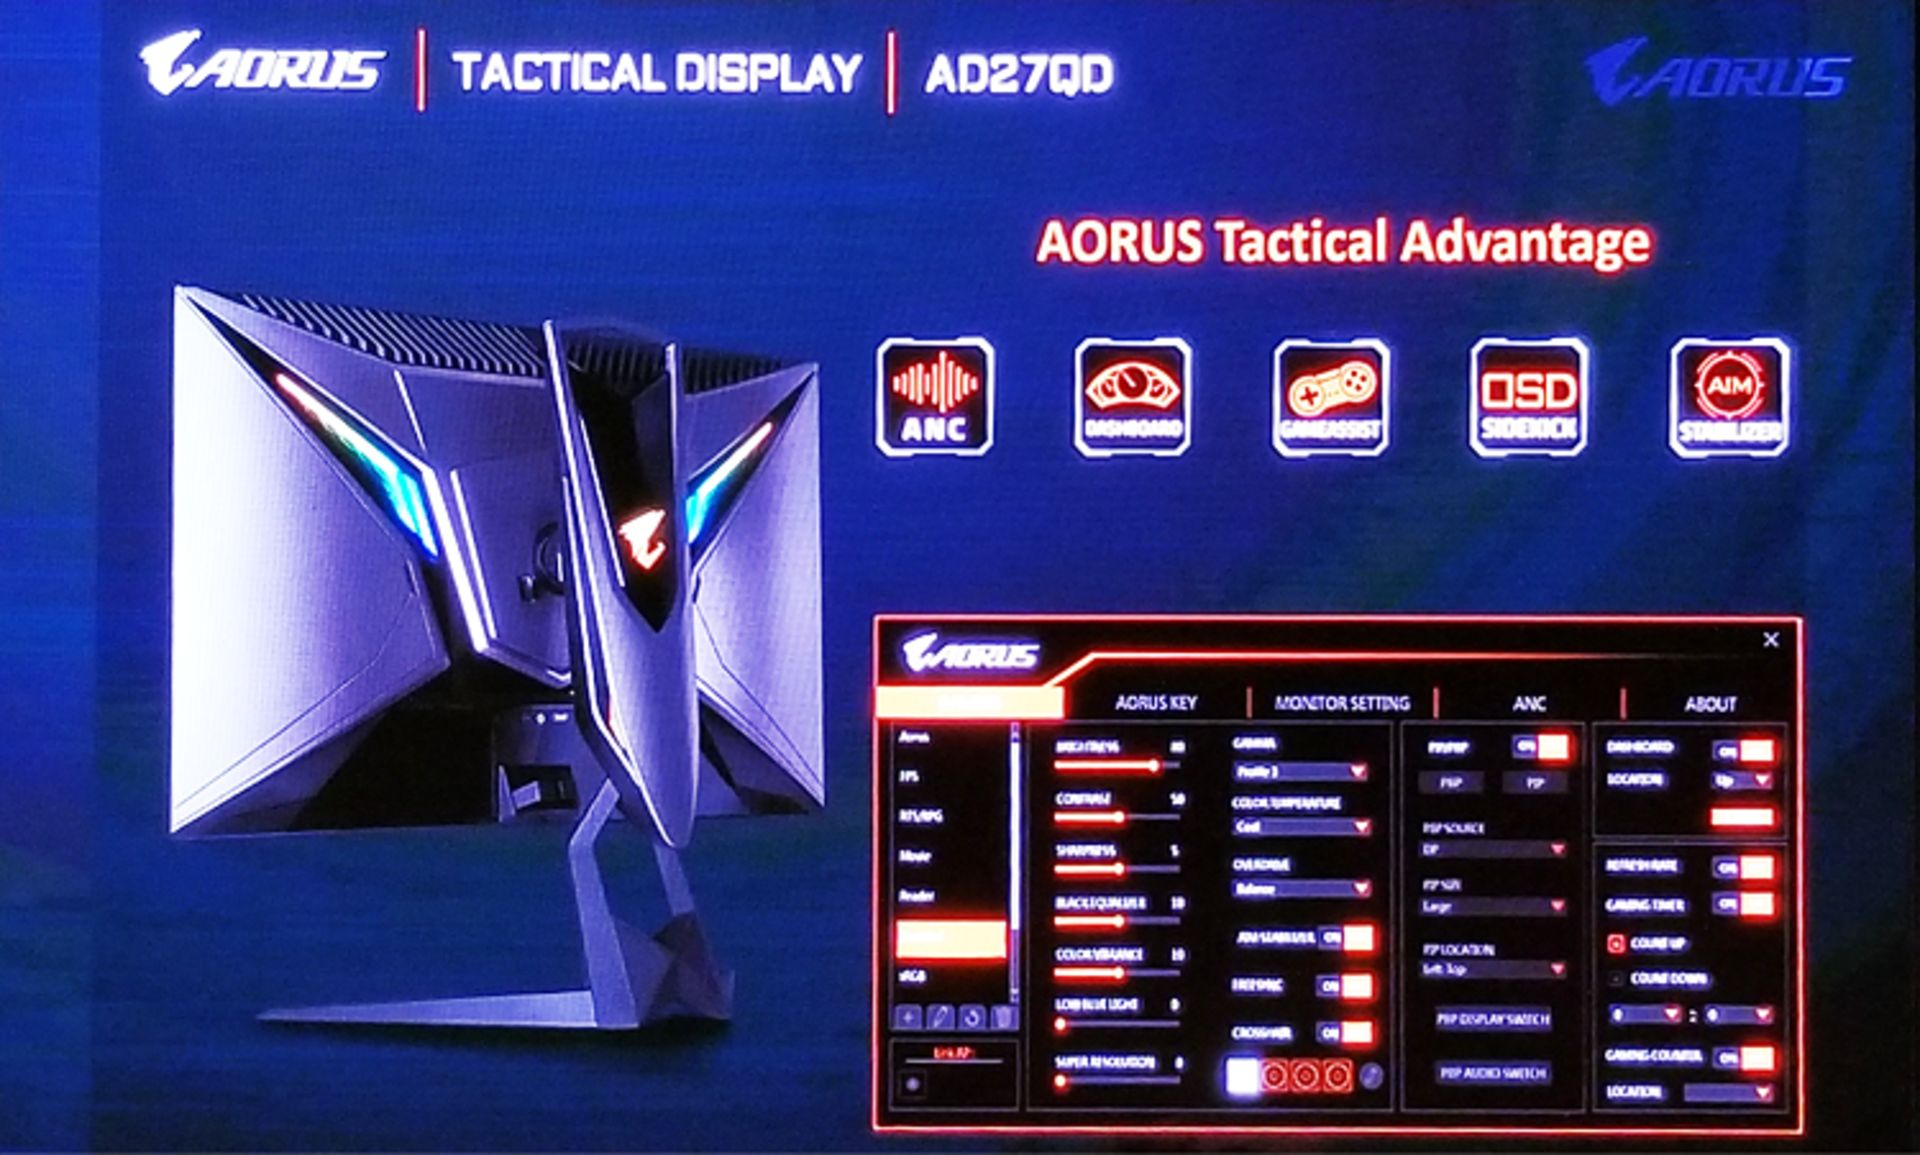 AD27QD Tactical Display‌